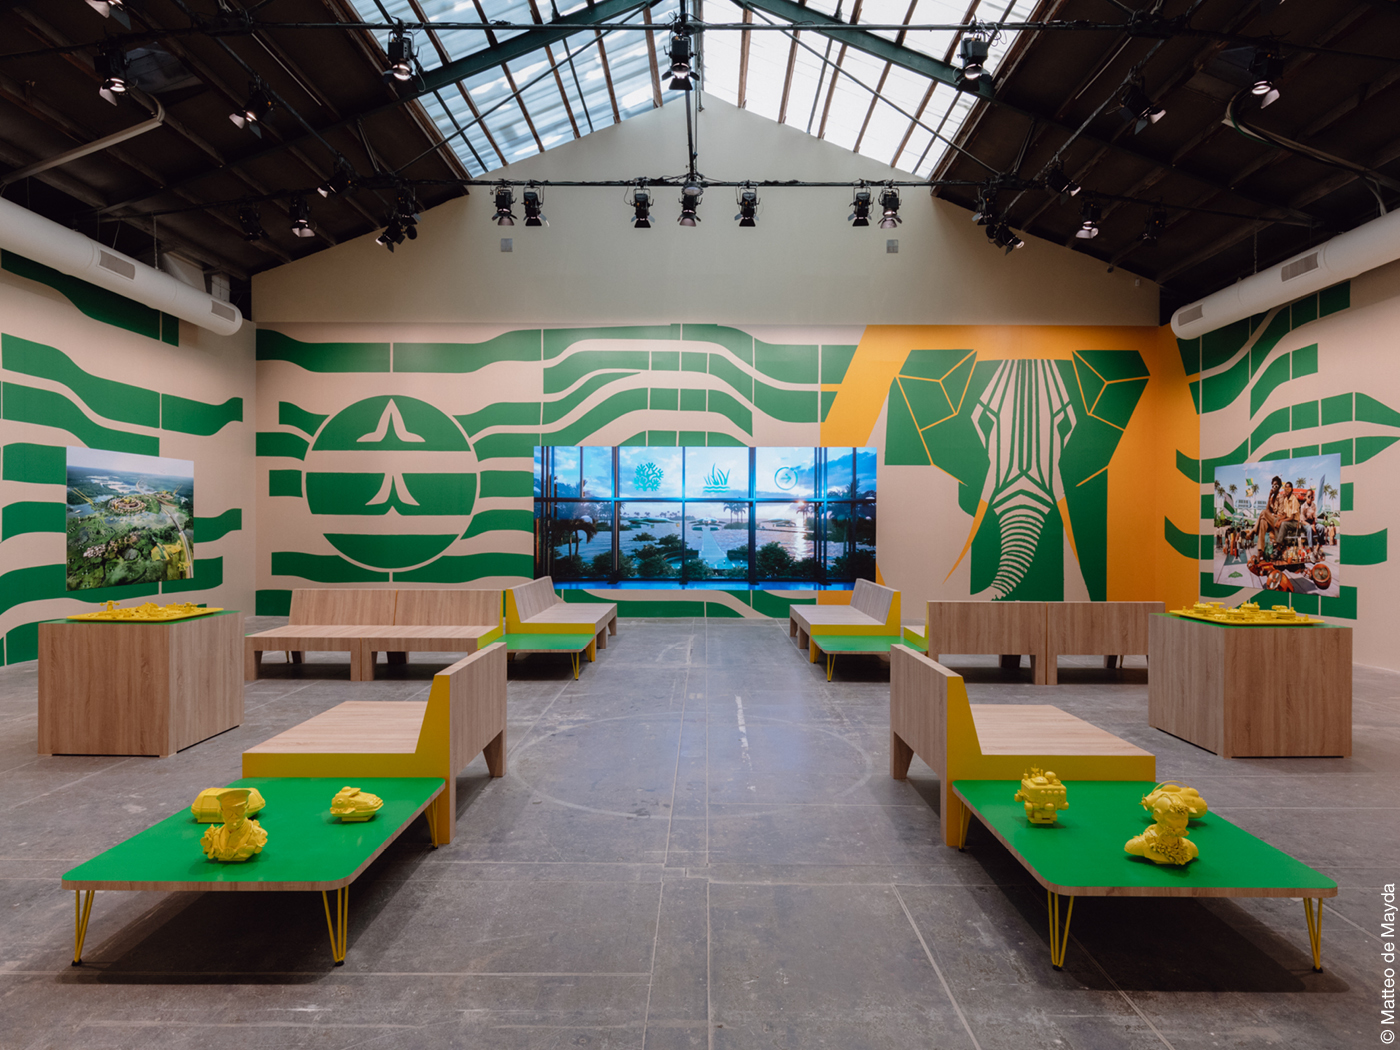 Das Bild zeigt den Nachbau einer grün-gelben Flughafenlounge mit afrikanischen Motiven an den Wänden, Tischen und Sitzbänken.